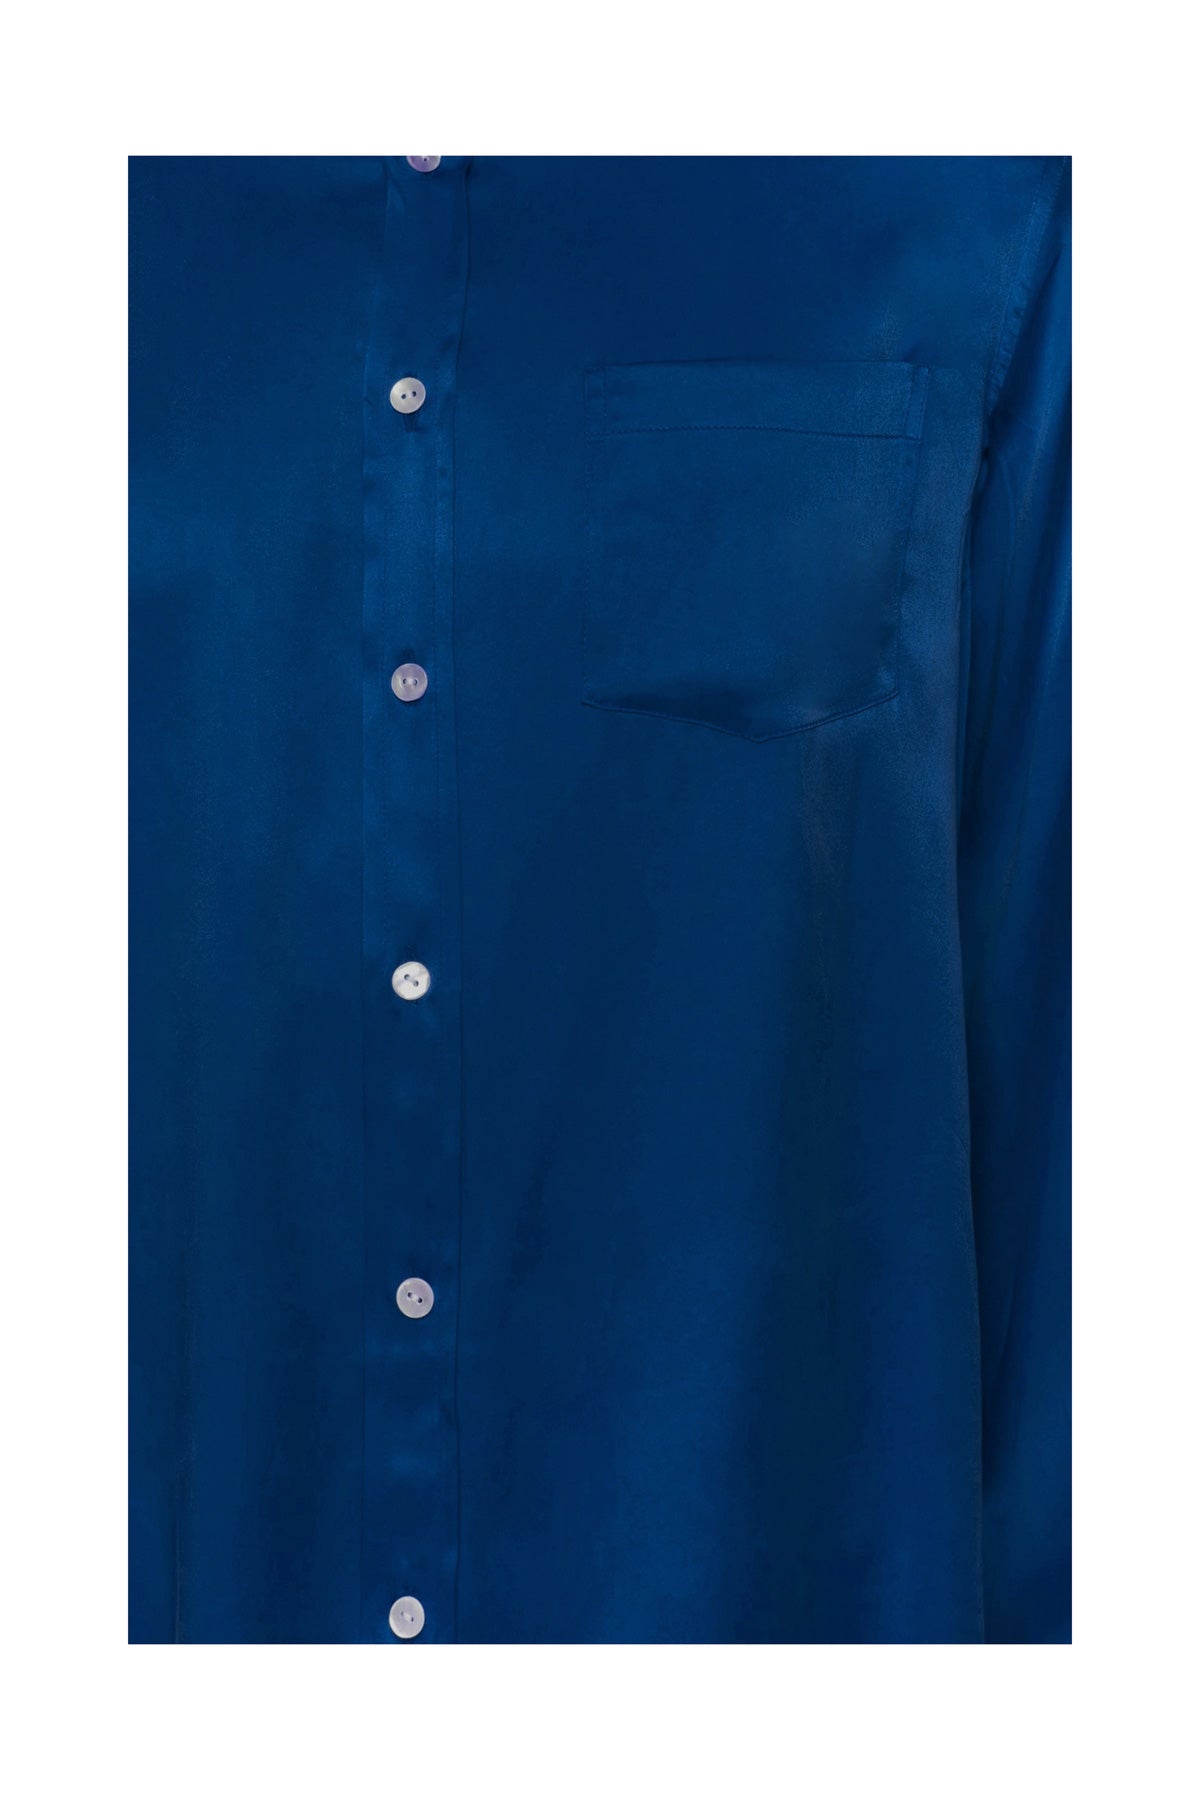 Men's Silk Shirt - Navy Blue